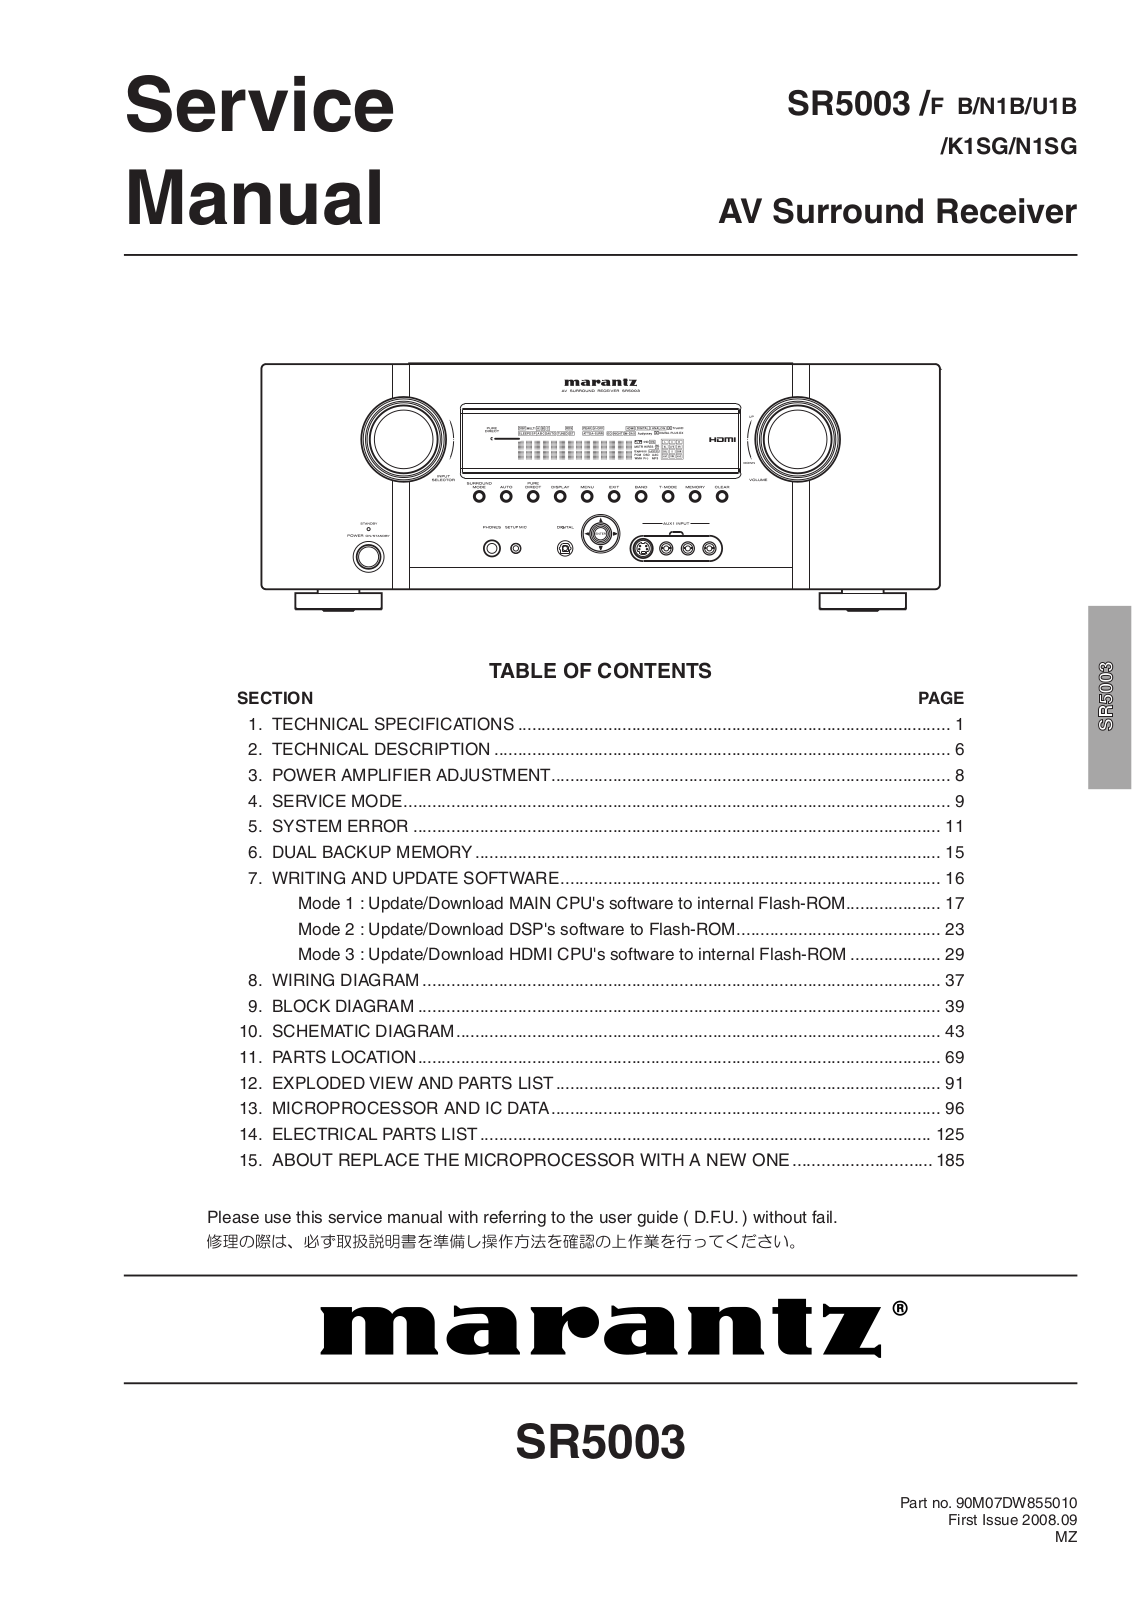 Marantz SR-5003 Service Manual